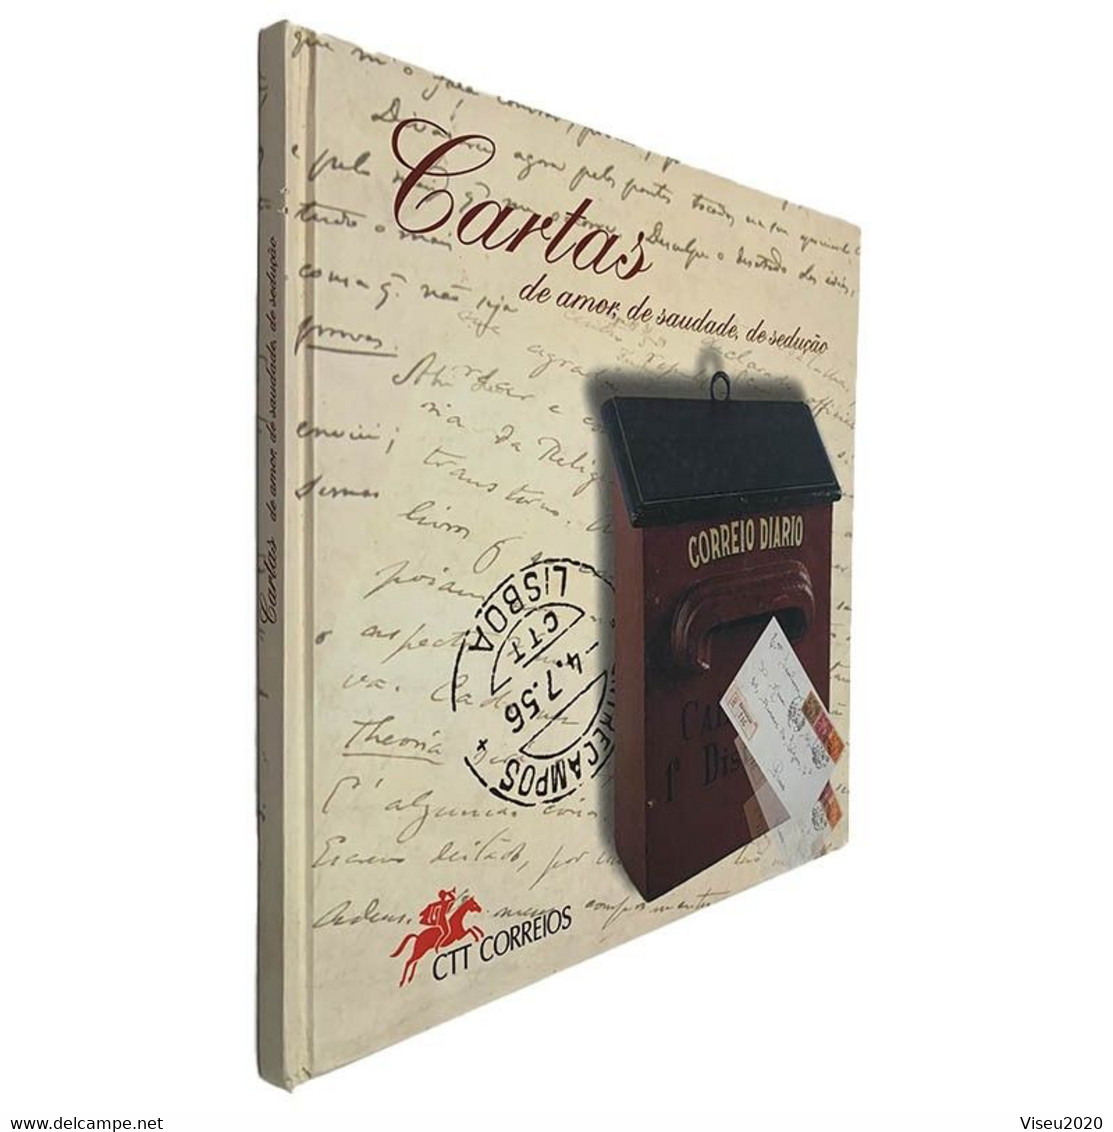 Portugal 1997 Cartas De Amor, De Saudade, De Sedução - LIVRO TEMATICO CTT - Book Of The Year